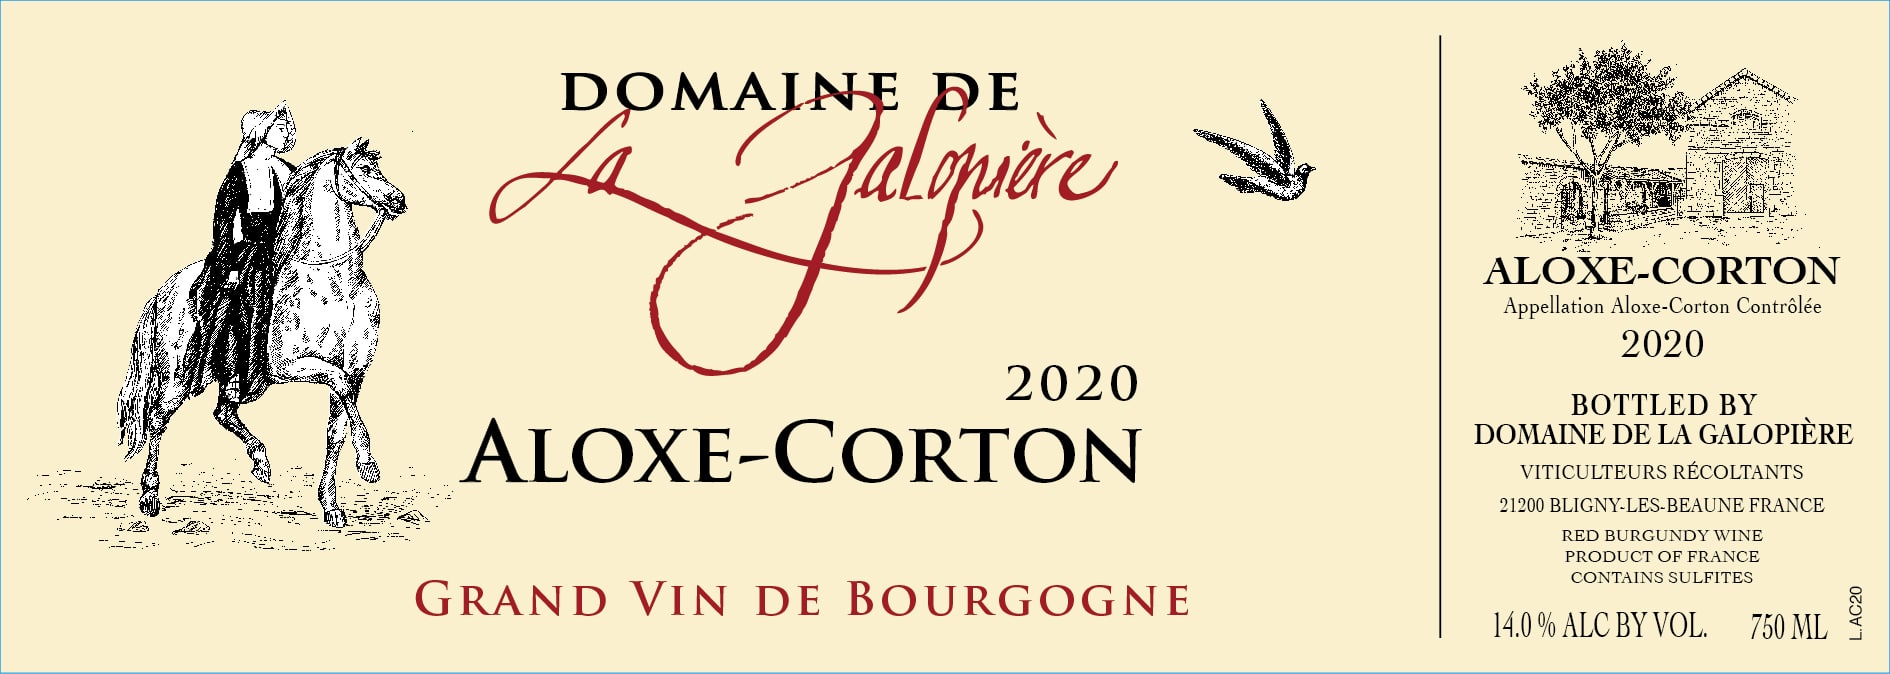 Aloxe Corton 2020